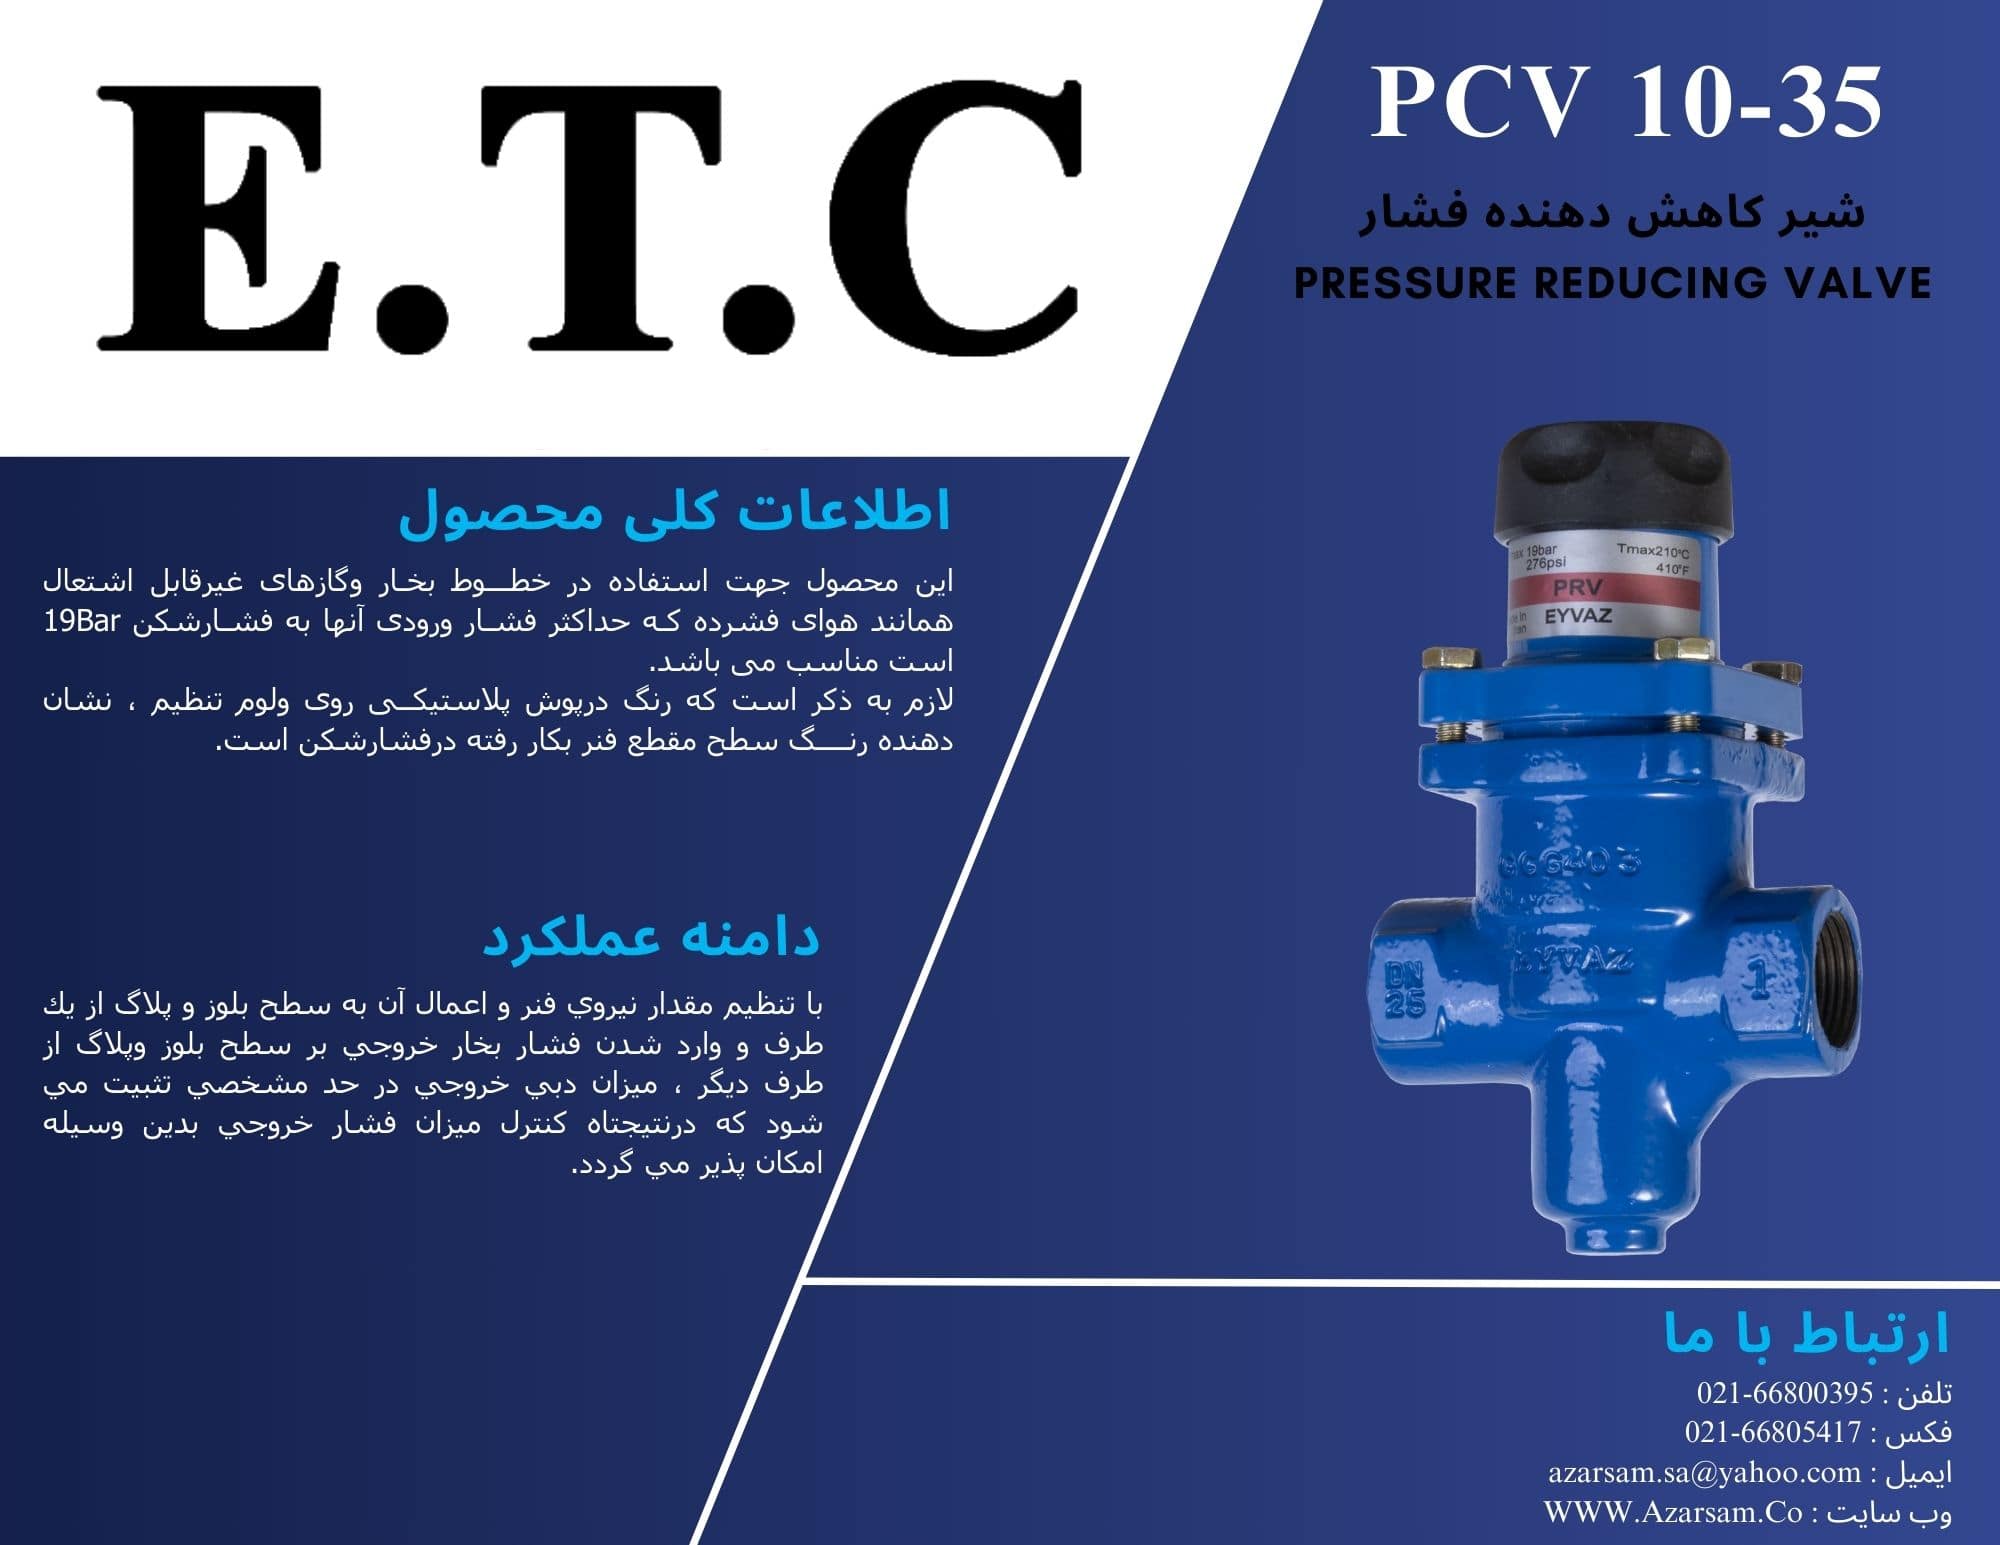 شیر کاهش دهنده فشار عیوض Pressure Reducing valve